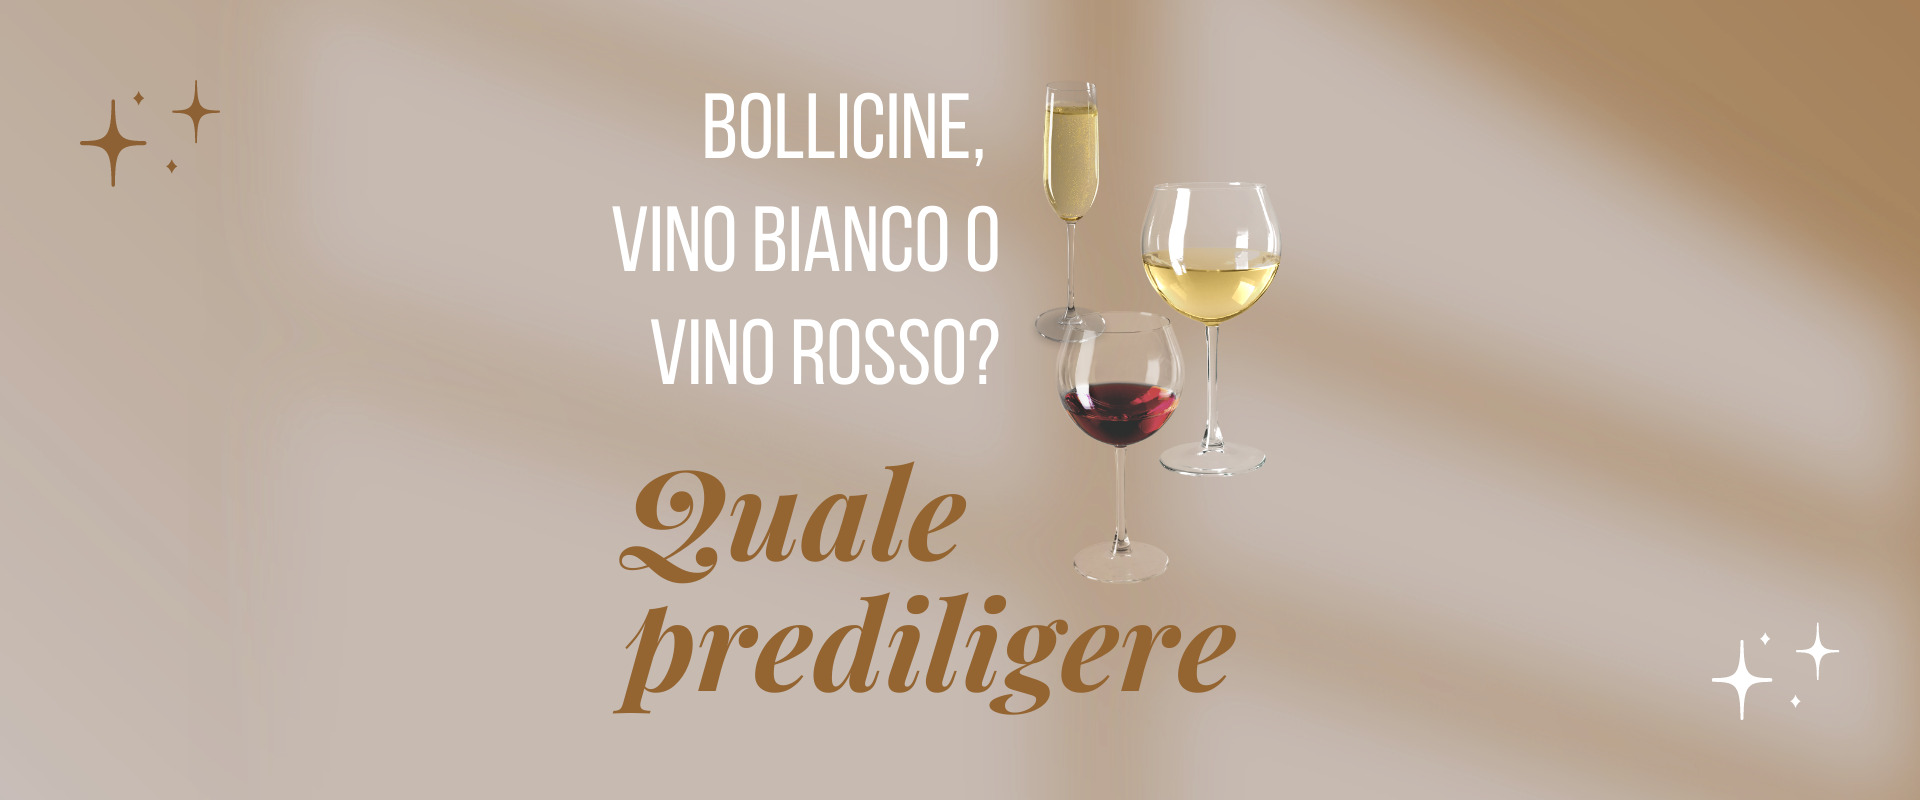 Bollicina, vino bianco o vino rosso?